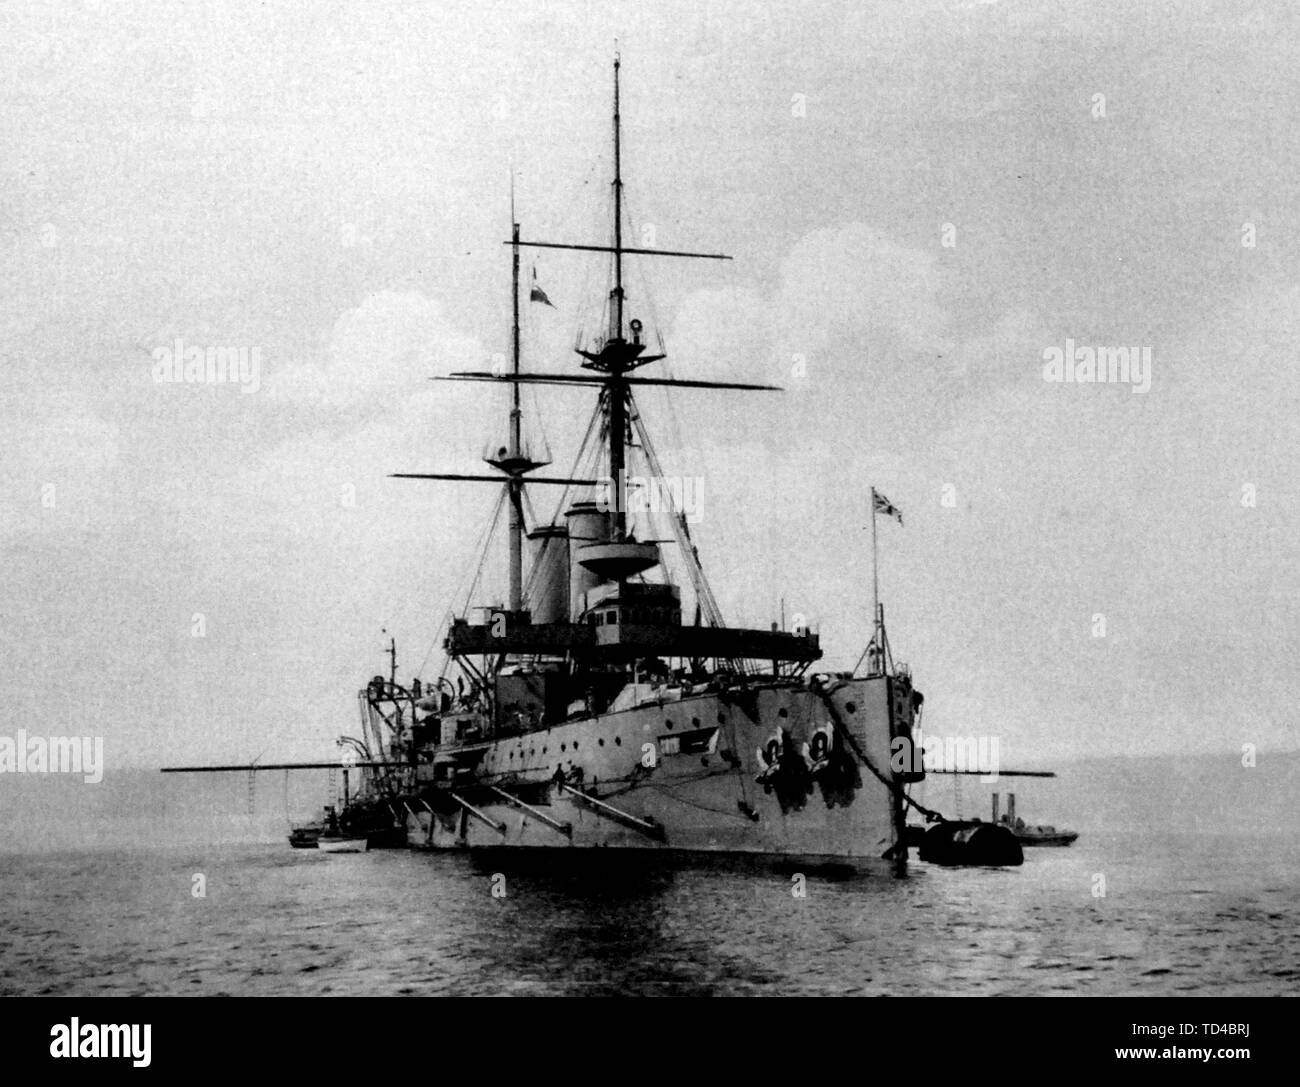 Le HMS Formidable, cuirassé de la Royal Navy, lancé en 1898. Torpillé et coulé, 1 janvier 1915 Banque D'Images